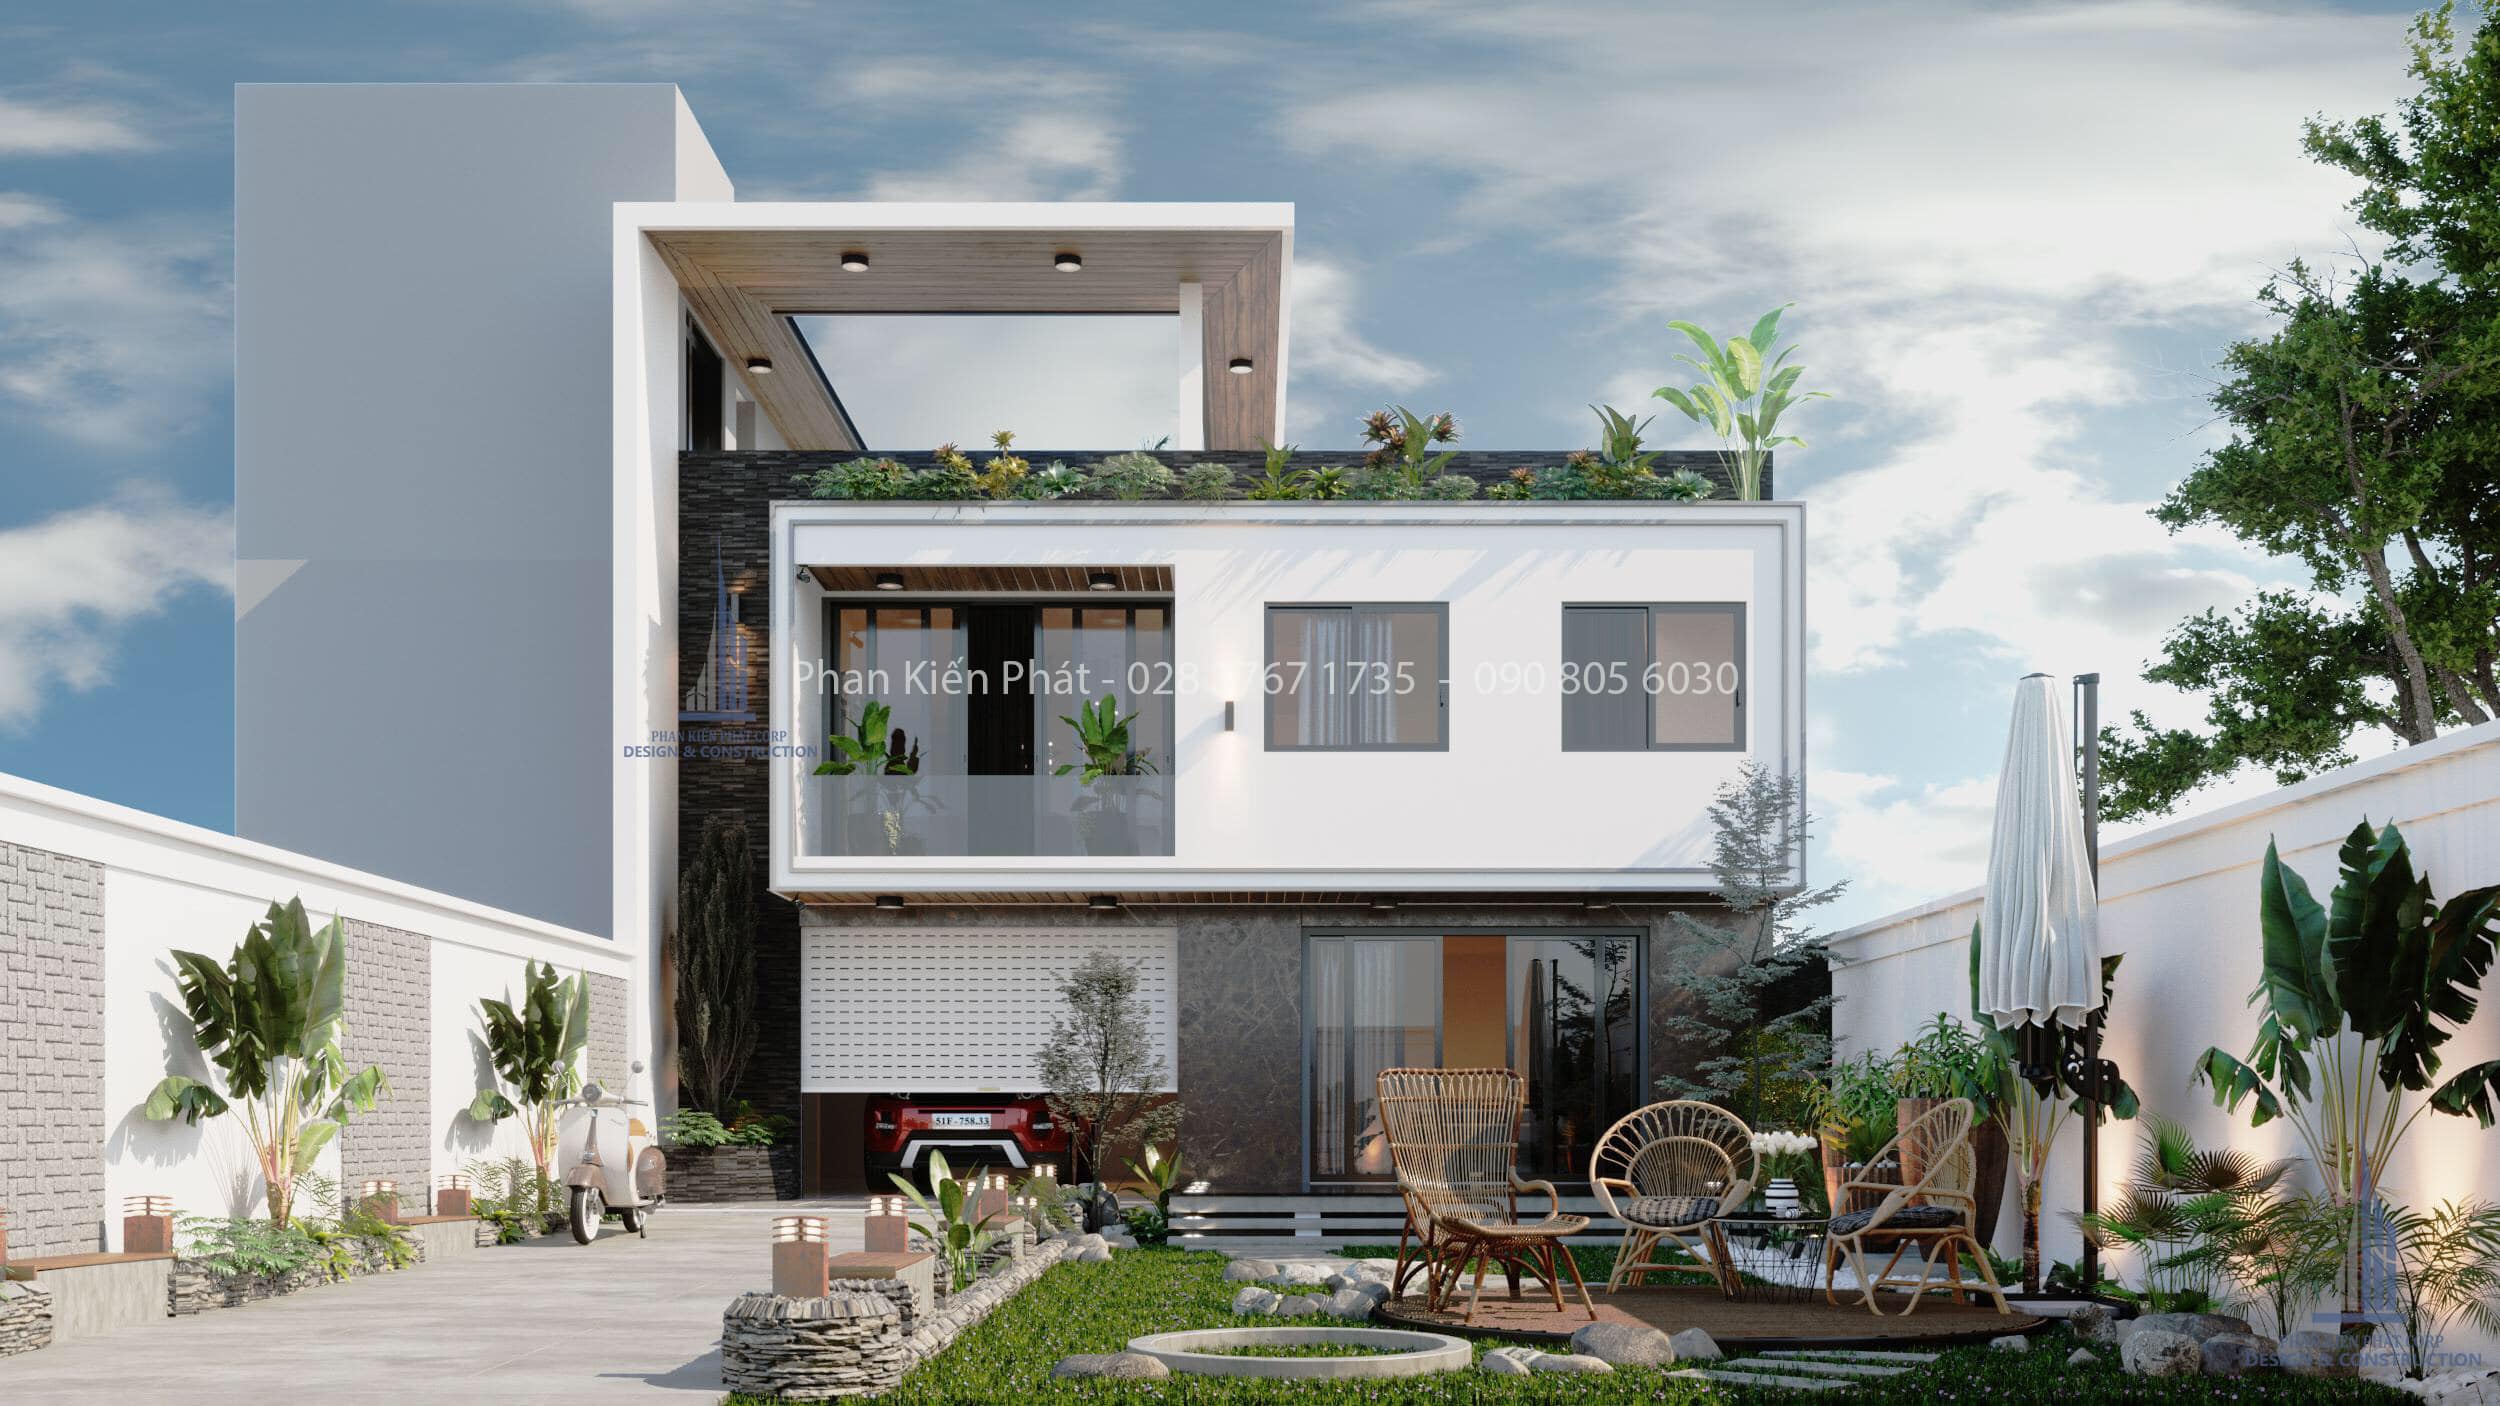 Thiết kế biệt thự vườn 2 tầng 1 tum đẹp tỏa sáng giữa lòng Thành Phố | Phan  Kiến Phát chuyên tư vấn - thiết kế - xây dựng nhà phố, biệt